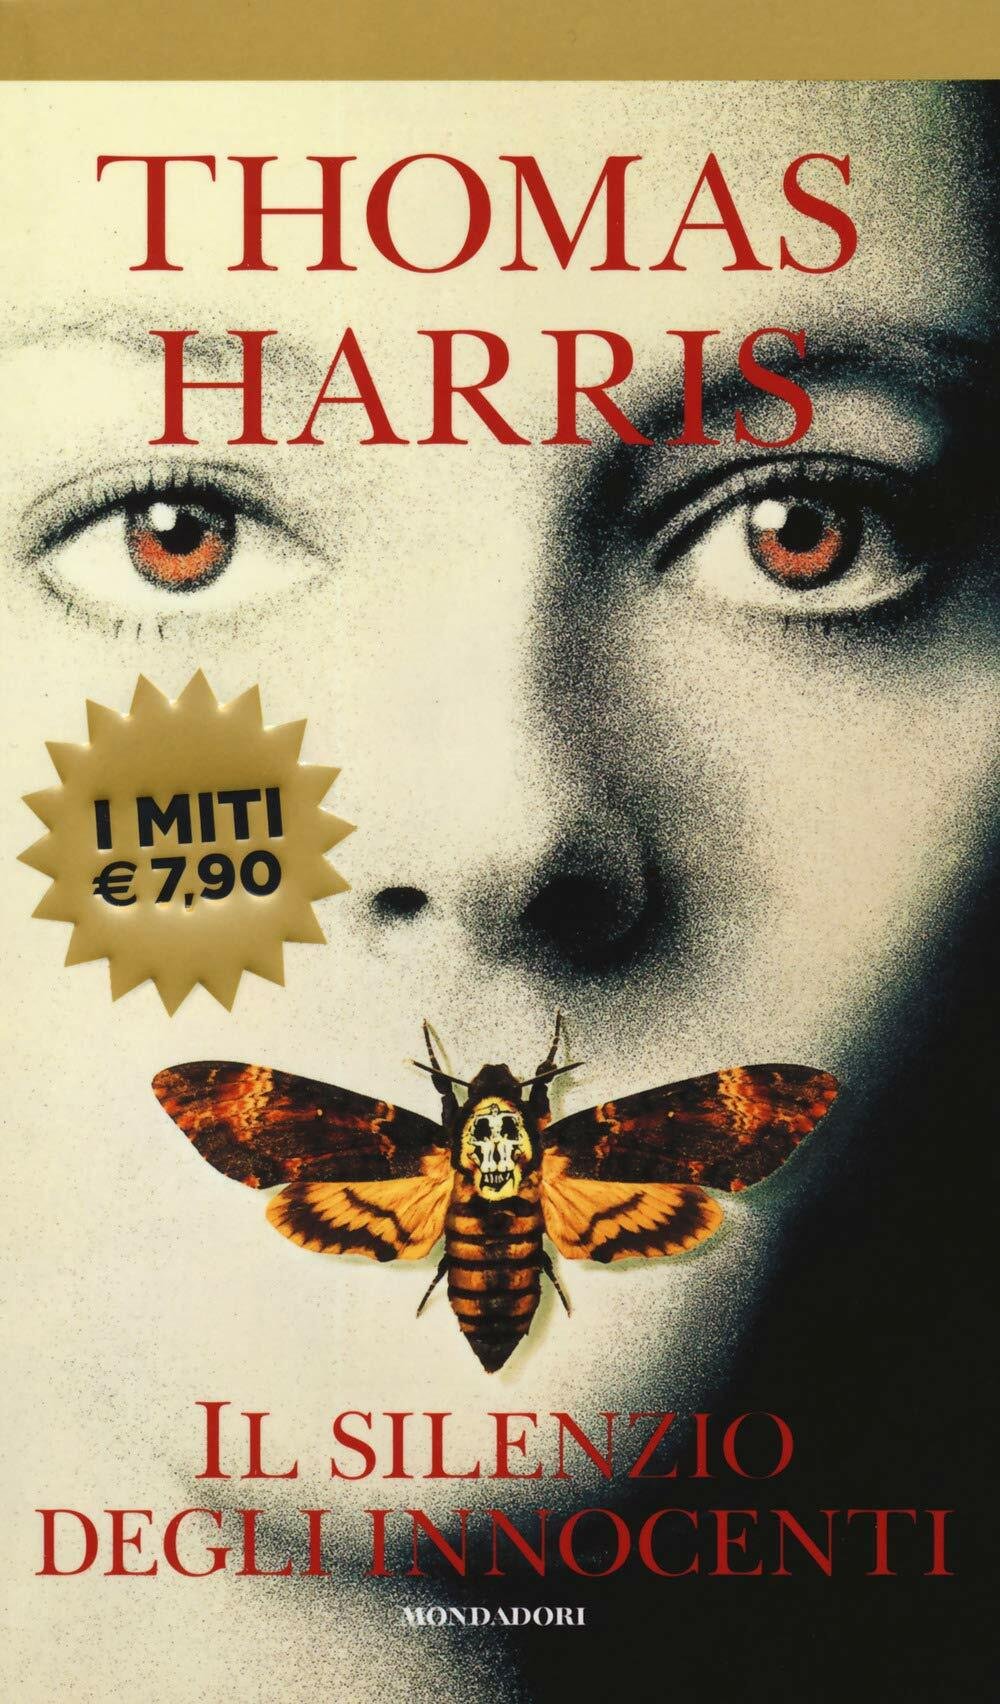 Il volto di una donna con una farfalla in primo piano nella cover del libro Il Silenzio degli Innocenti 